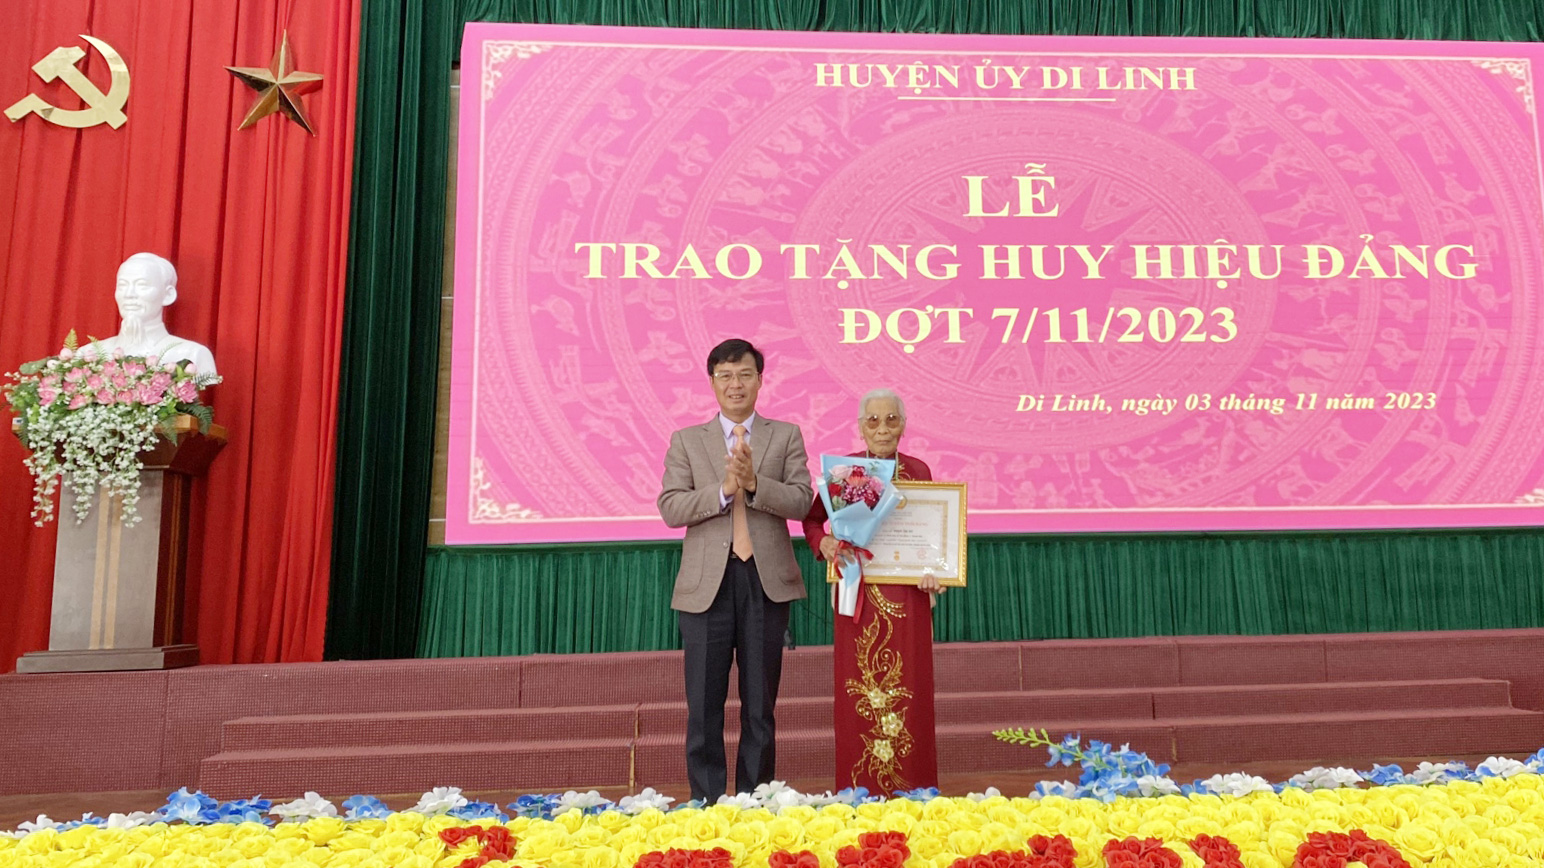 Đồng chí Đinh Văn Tuấn - Bí thư Huyện ủy Di Linh trao huy hiệu 75 năm tuổi Đảng cho đảng viên Phạm Thị Dư